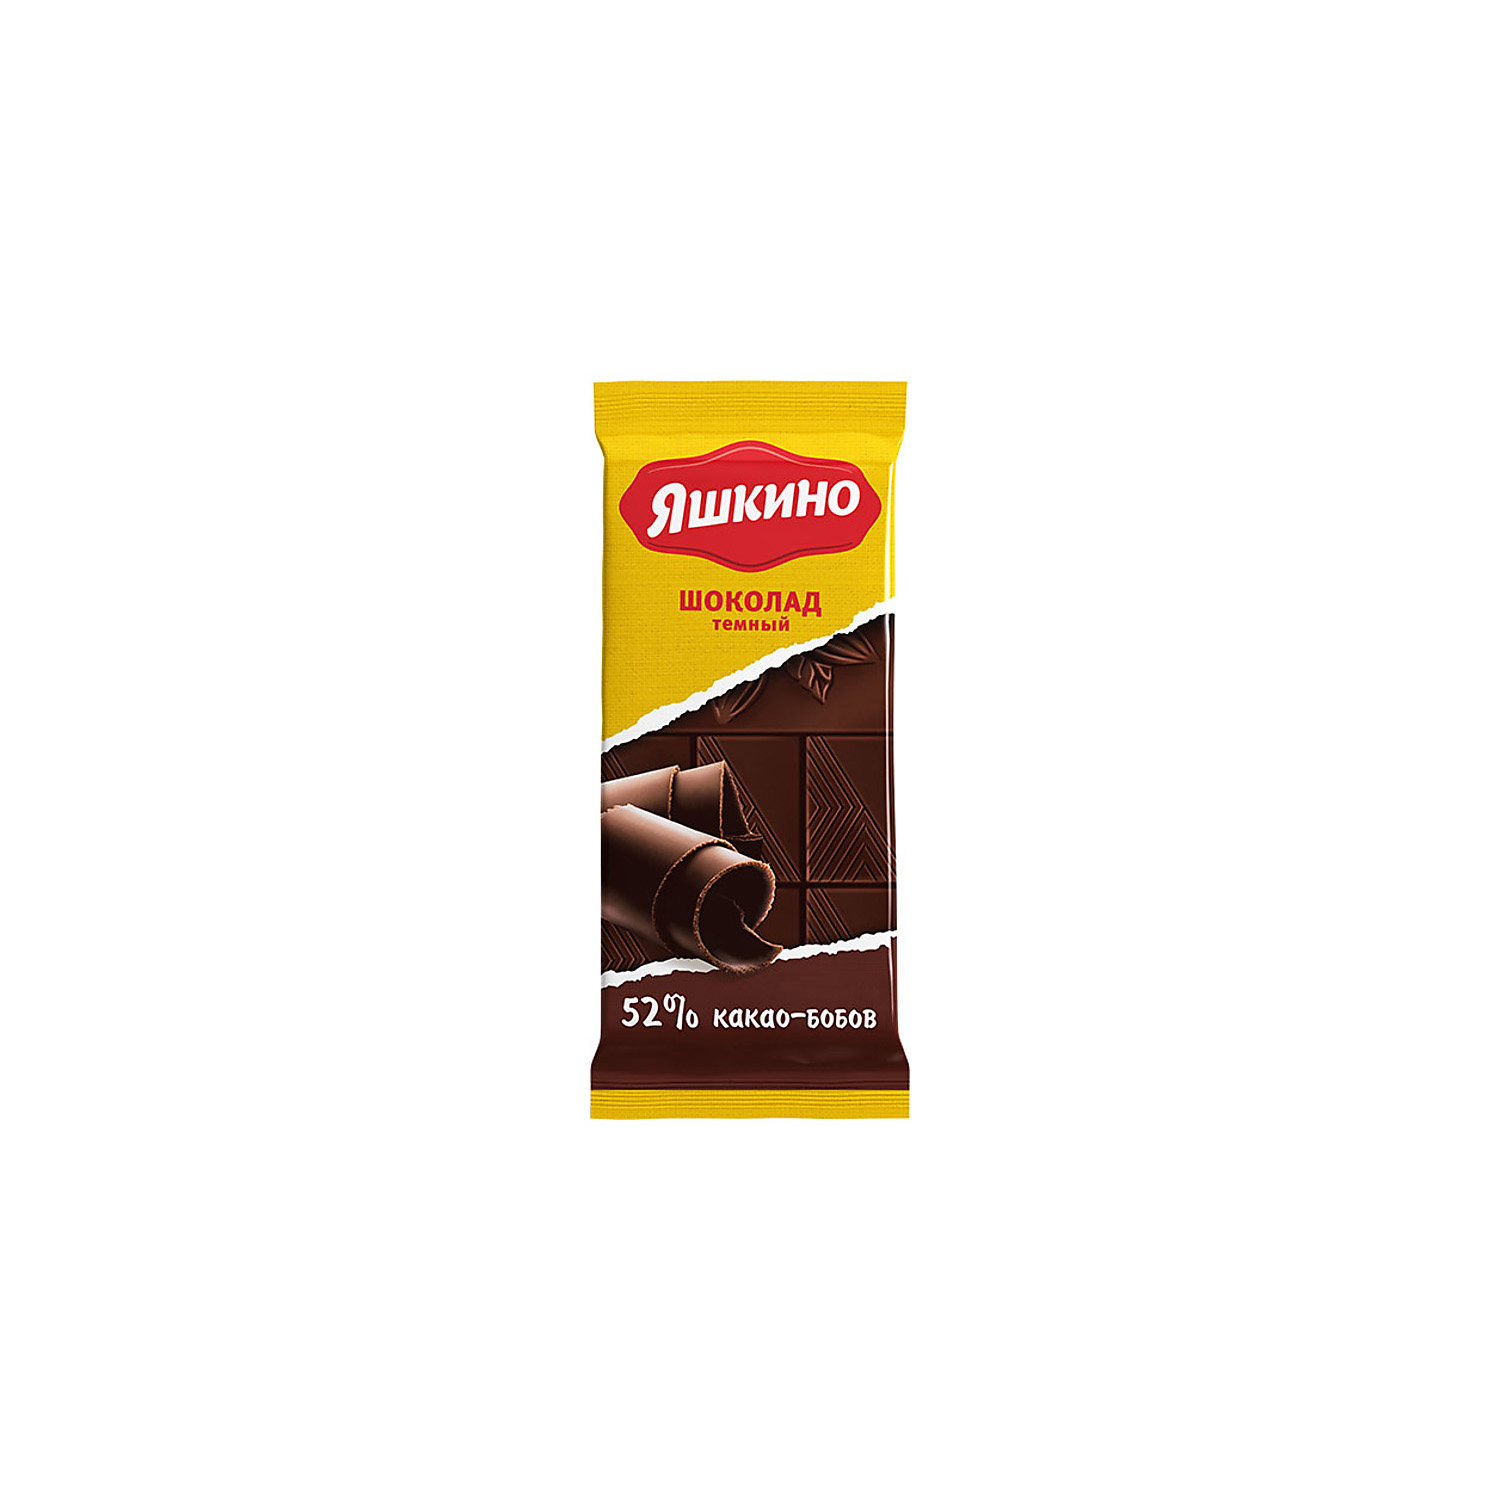 Шоколад Яшкино тёмный содержание какао 52% 90 г 7 шт - фото 1